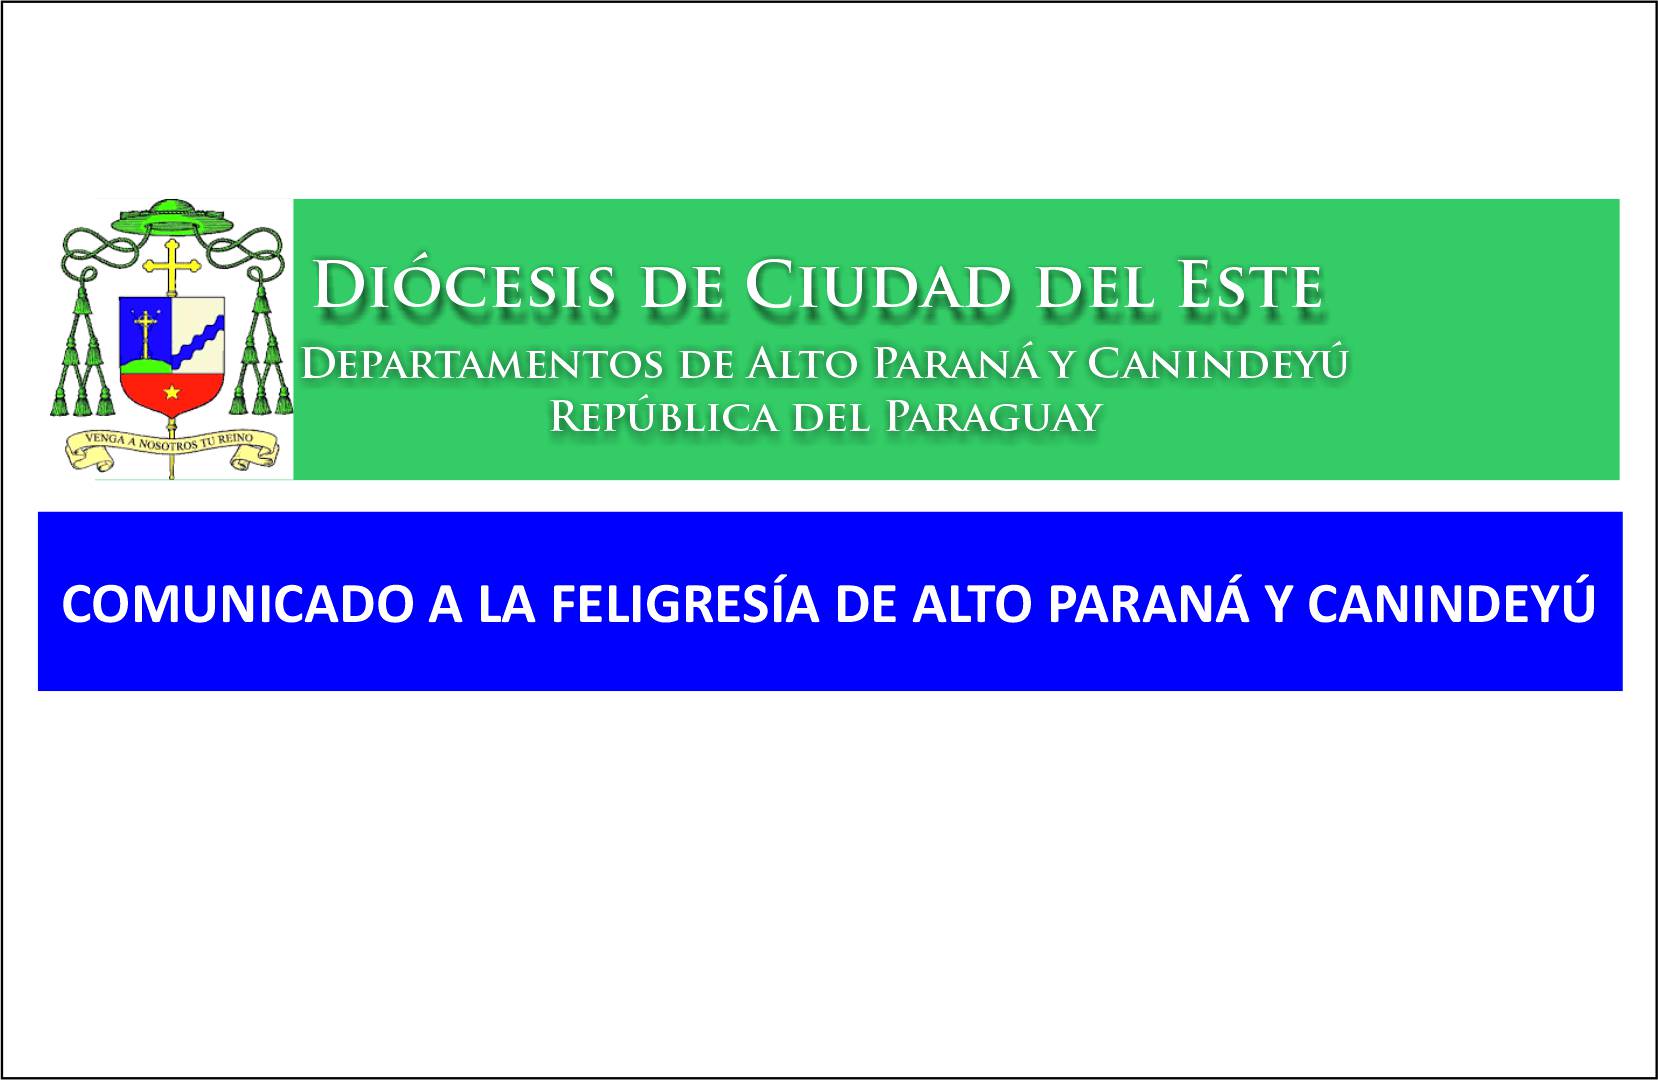 Comunicado a la feligresía de Alto Paraná y Canindeyú